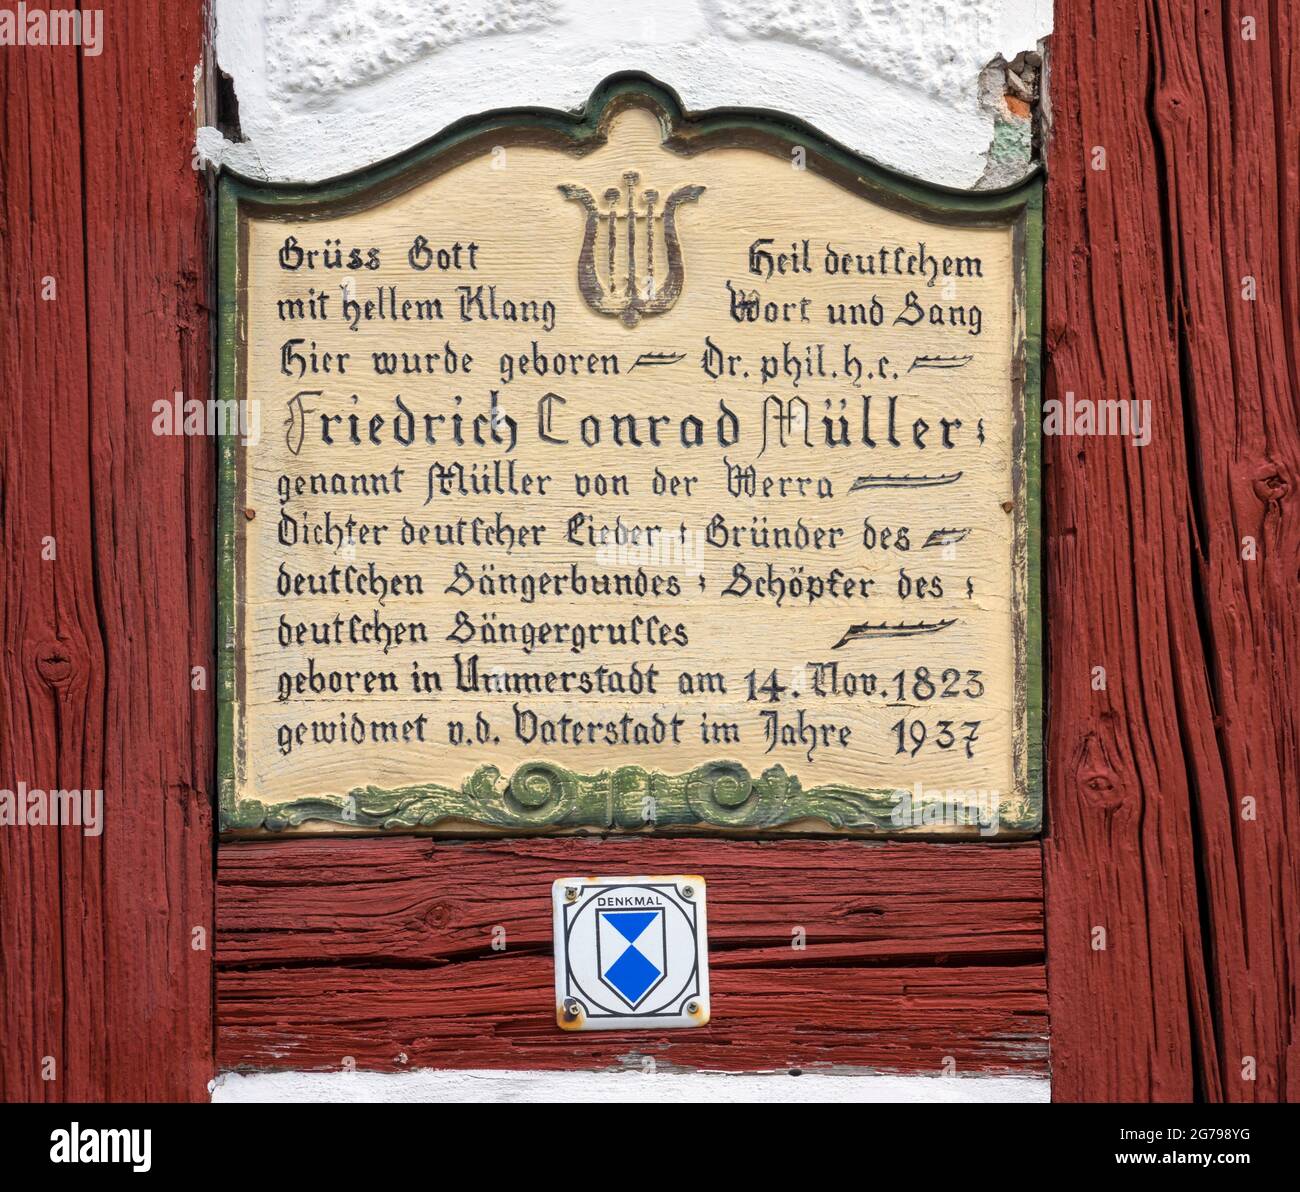 Ummerstadt es (2019) la ciudad más pequeña de Turingia. El histórico casco antiguo de Ummerstadt, con sus muchas casas de entramado de madera, es un edificio catalogado. La plaza del mercado en el extremo superior de la cual es el lugar de nacimiento de Friedrich Konrad Müller es particularmente digno de ver. Müller, que se llamó 'Müller von der Werra', es el autor de muchos poemas y canciones patrióticas. Foto de stock